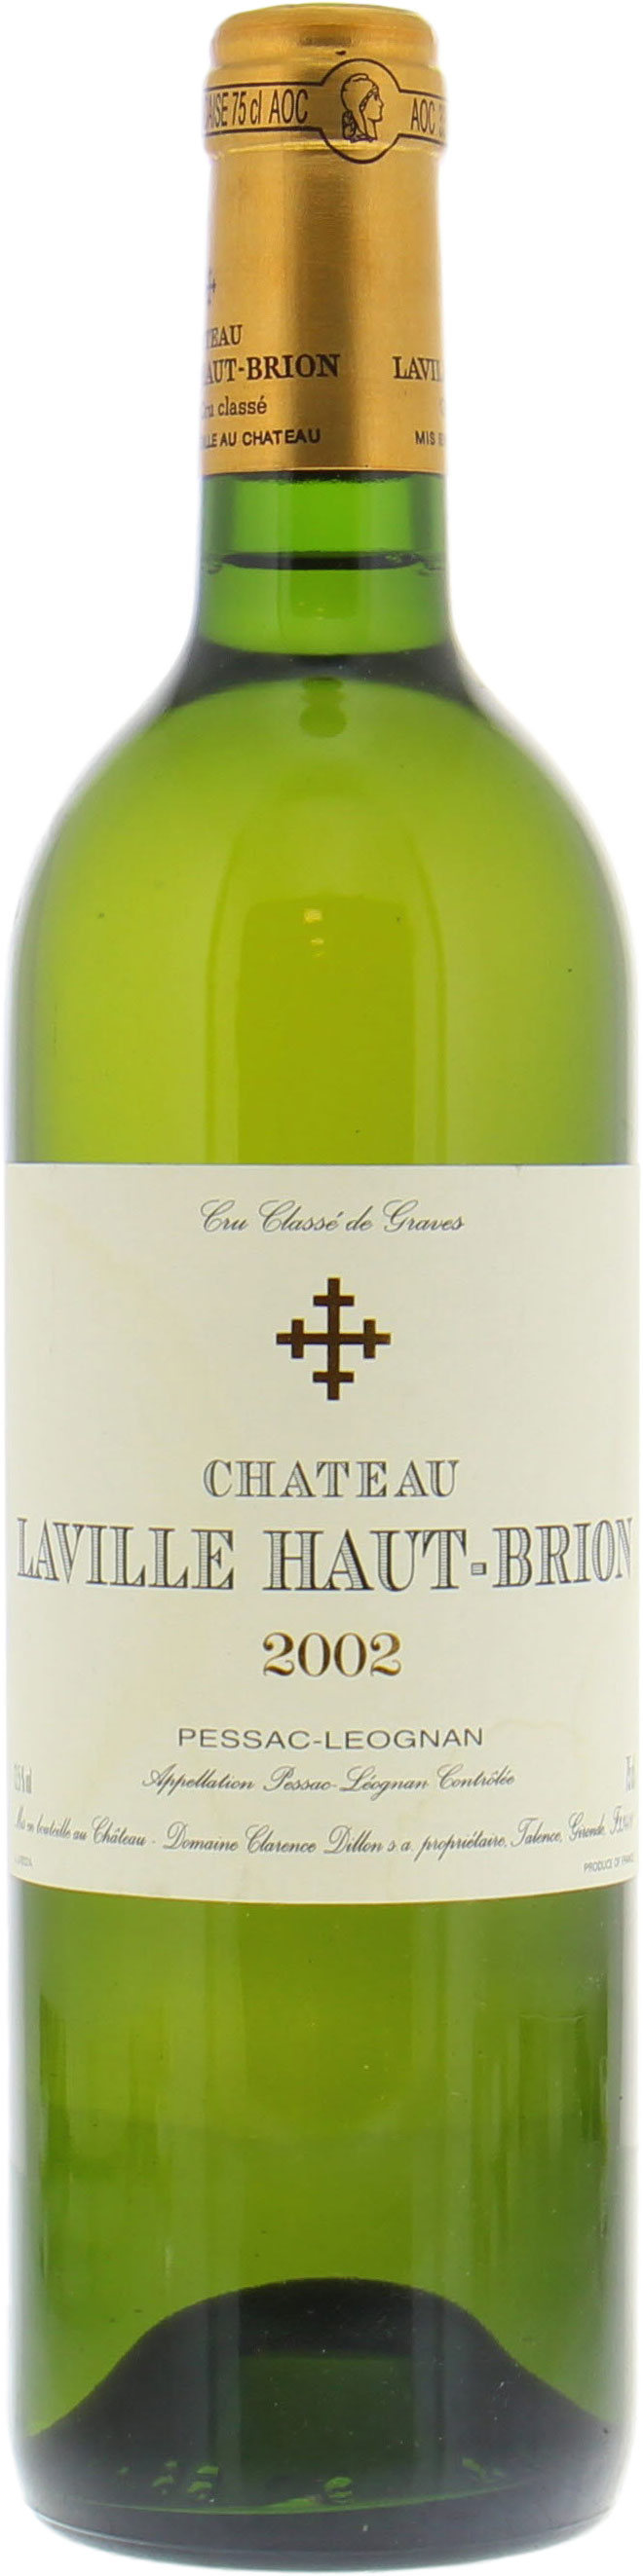 Chateau Laville Haut Brion Blanc - Chateau Laville Haut Brion Blanc 2002 Perfect